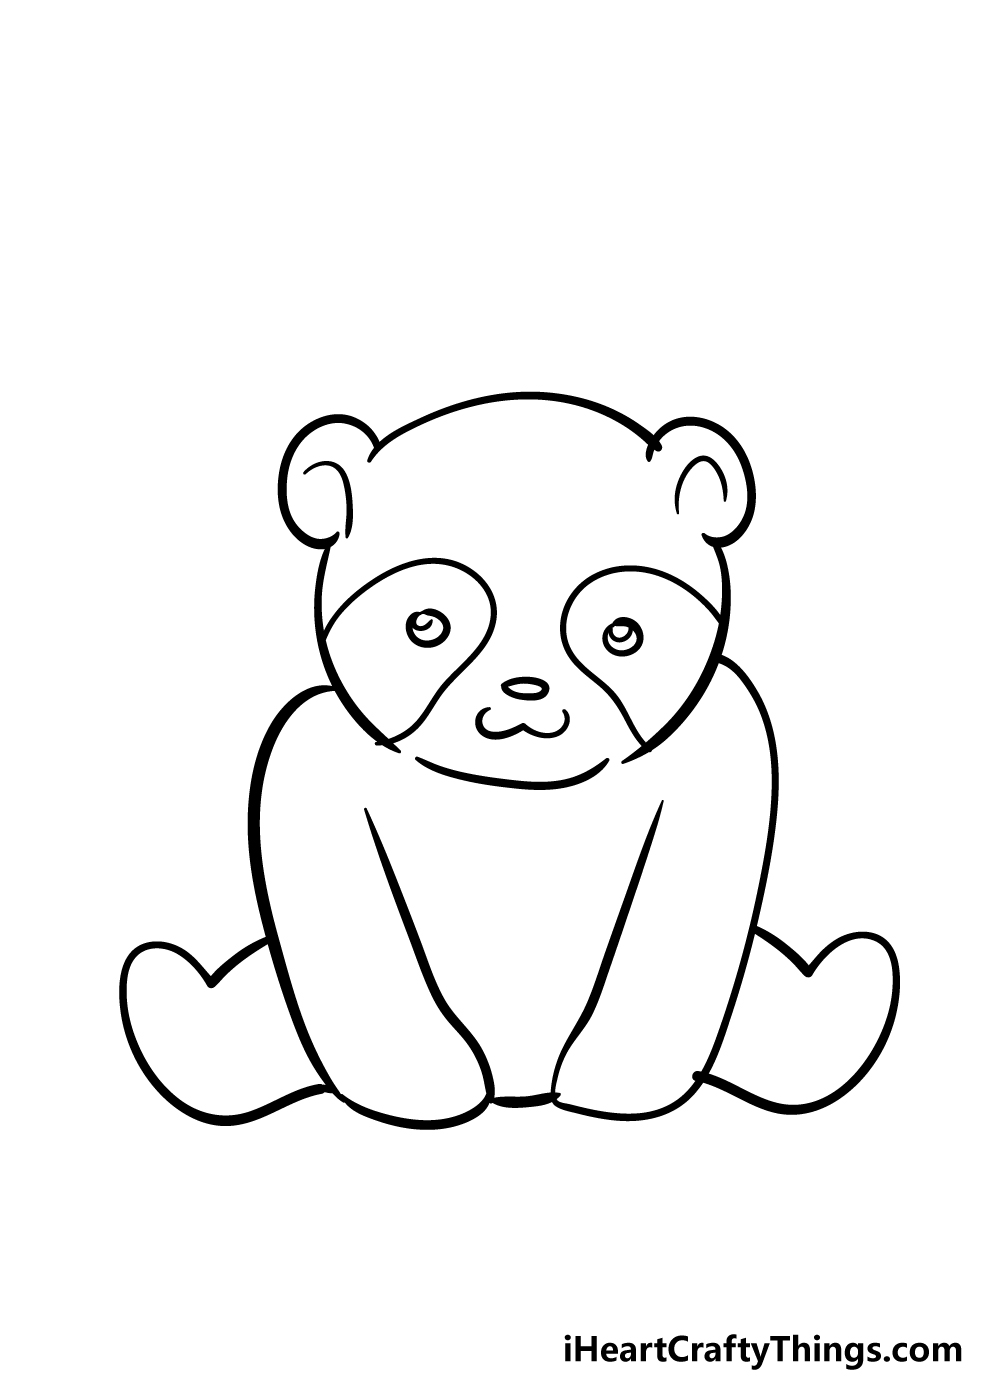 Panda5 - Hướng dẫn chi tiết cách vẽ con gấu trúc cute dễ thương với 7 bước đơn giản